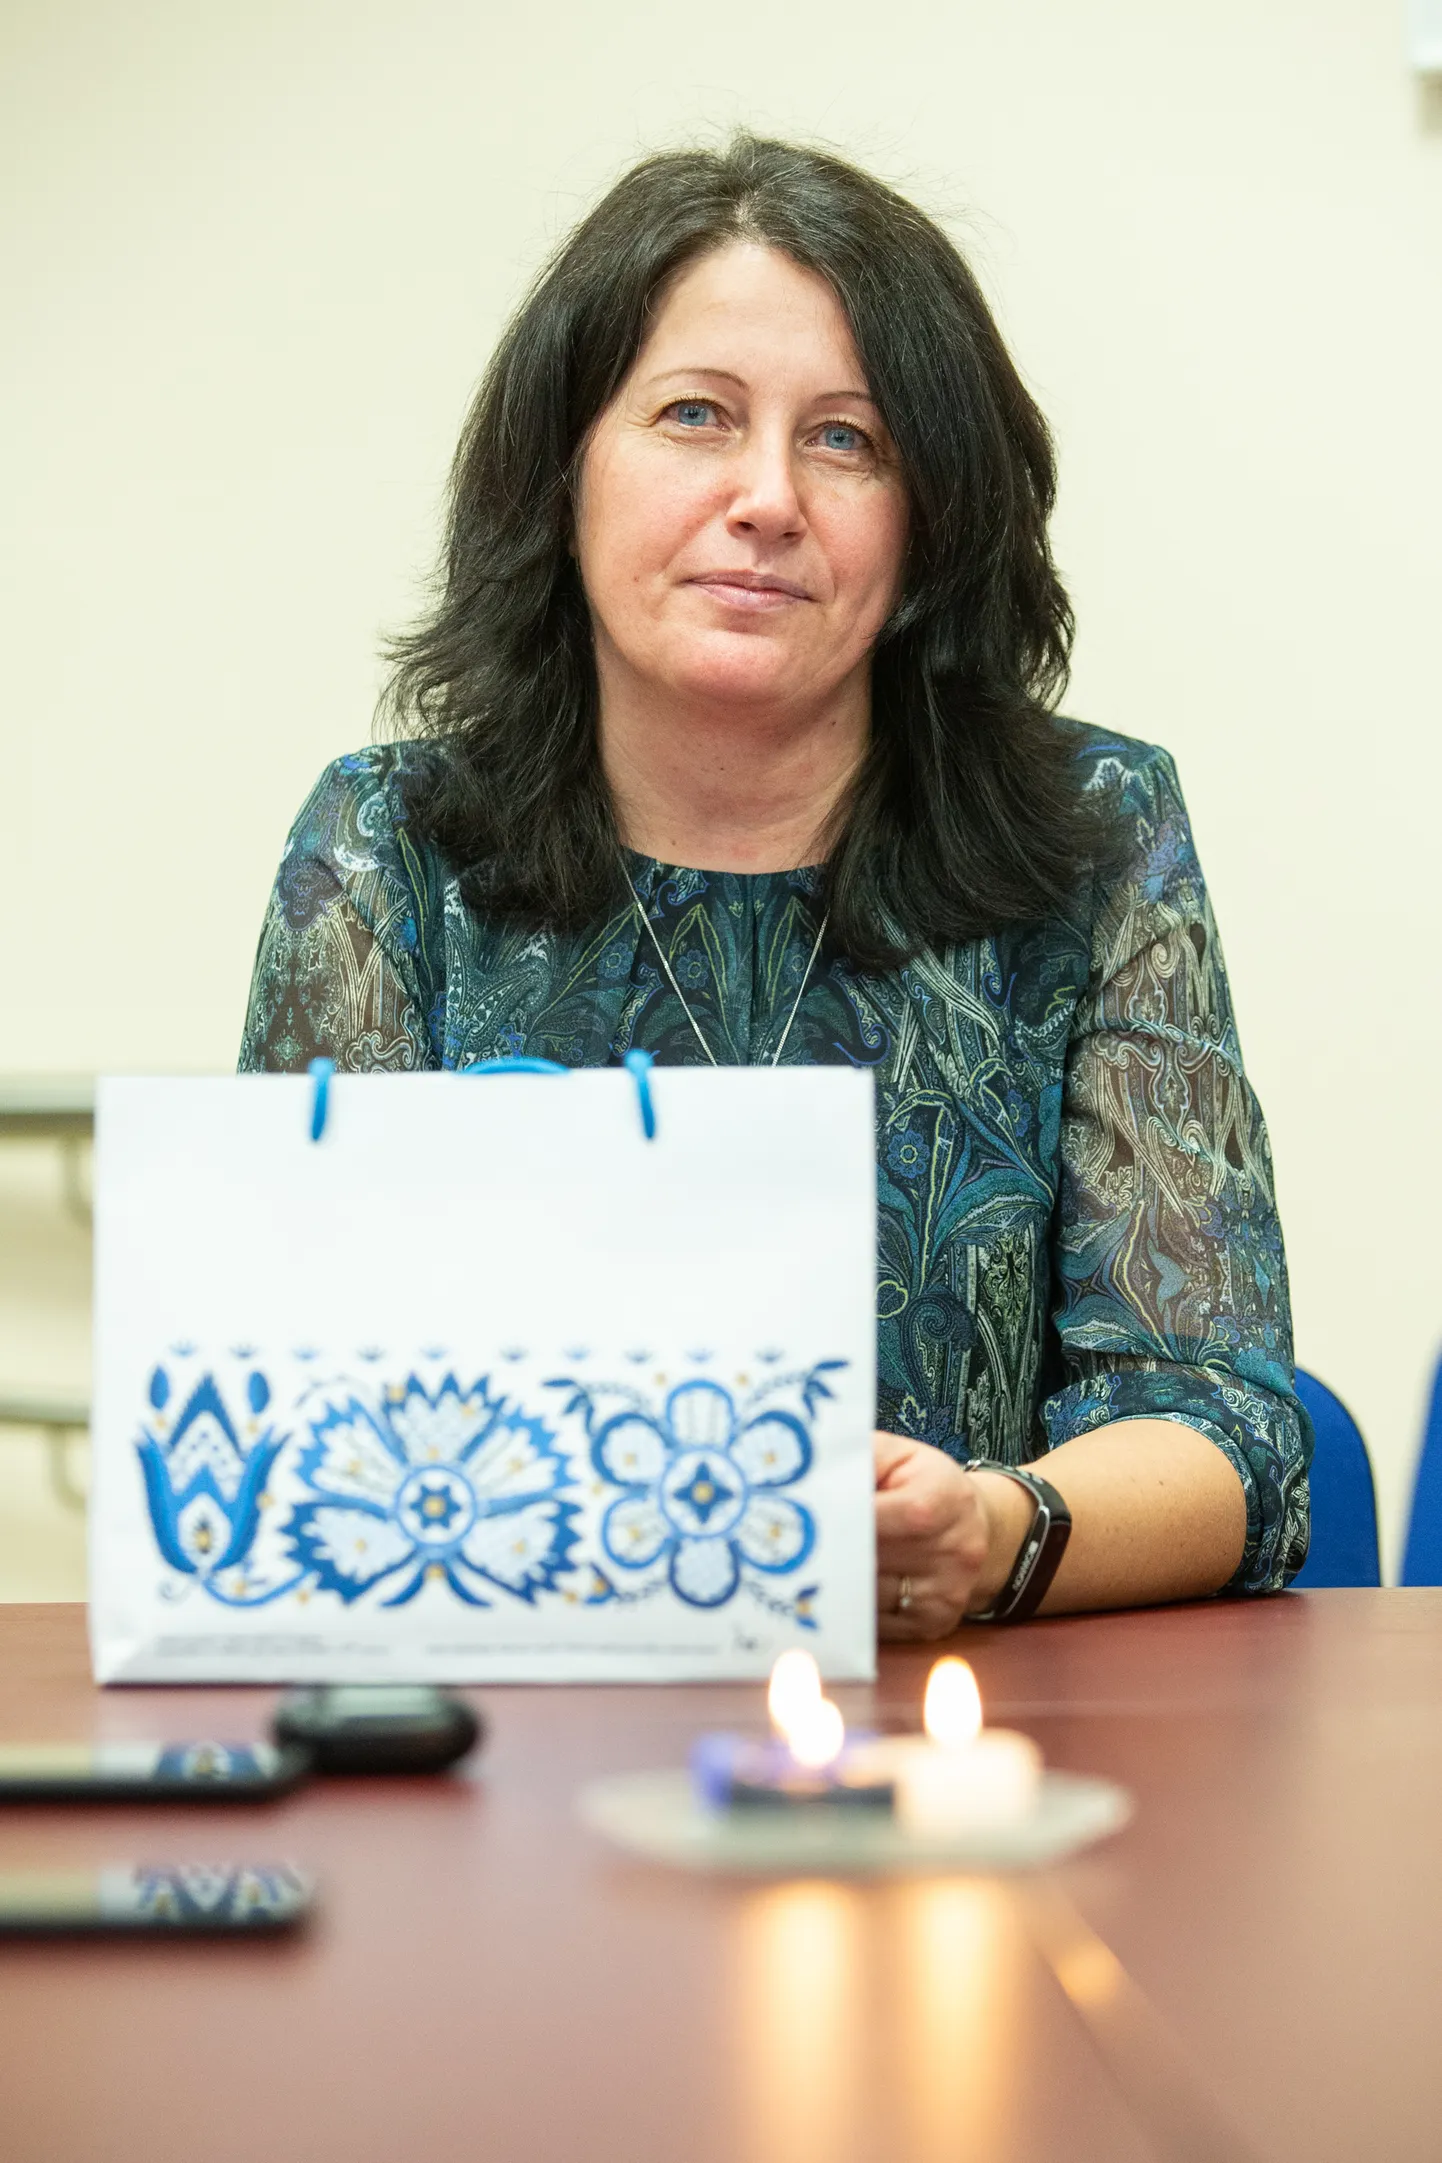 В прошлый раз титула "Учитель эстонского языка года" удостоилась Меэли Рябова, основным местом работы которой является Силламяэская эстонская основная школа.